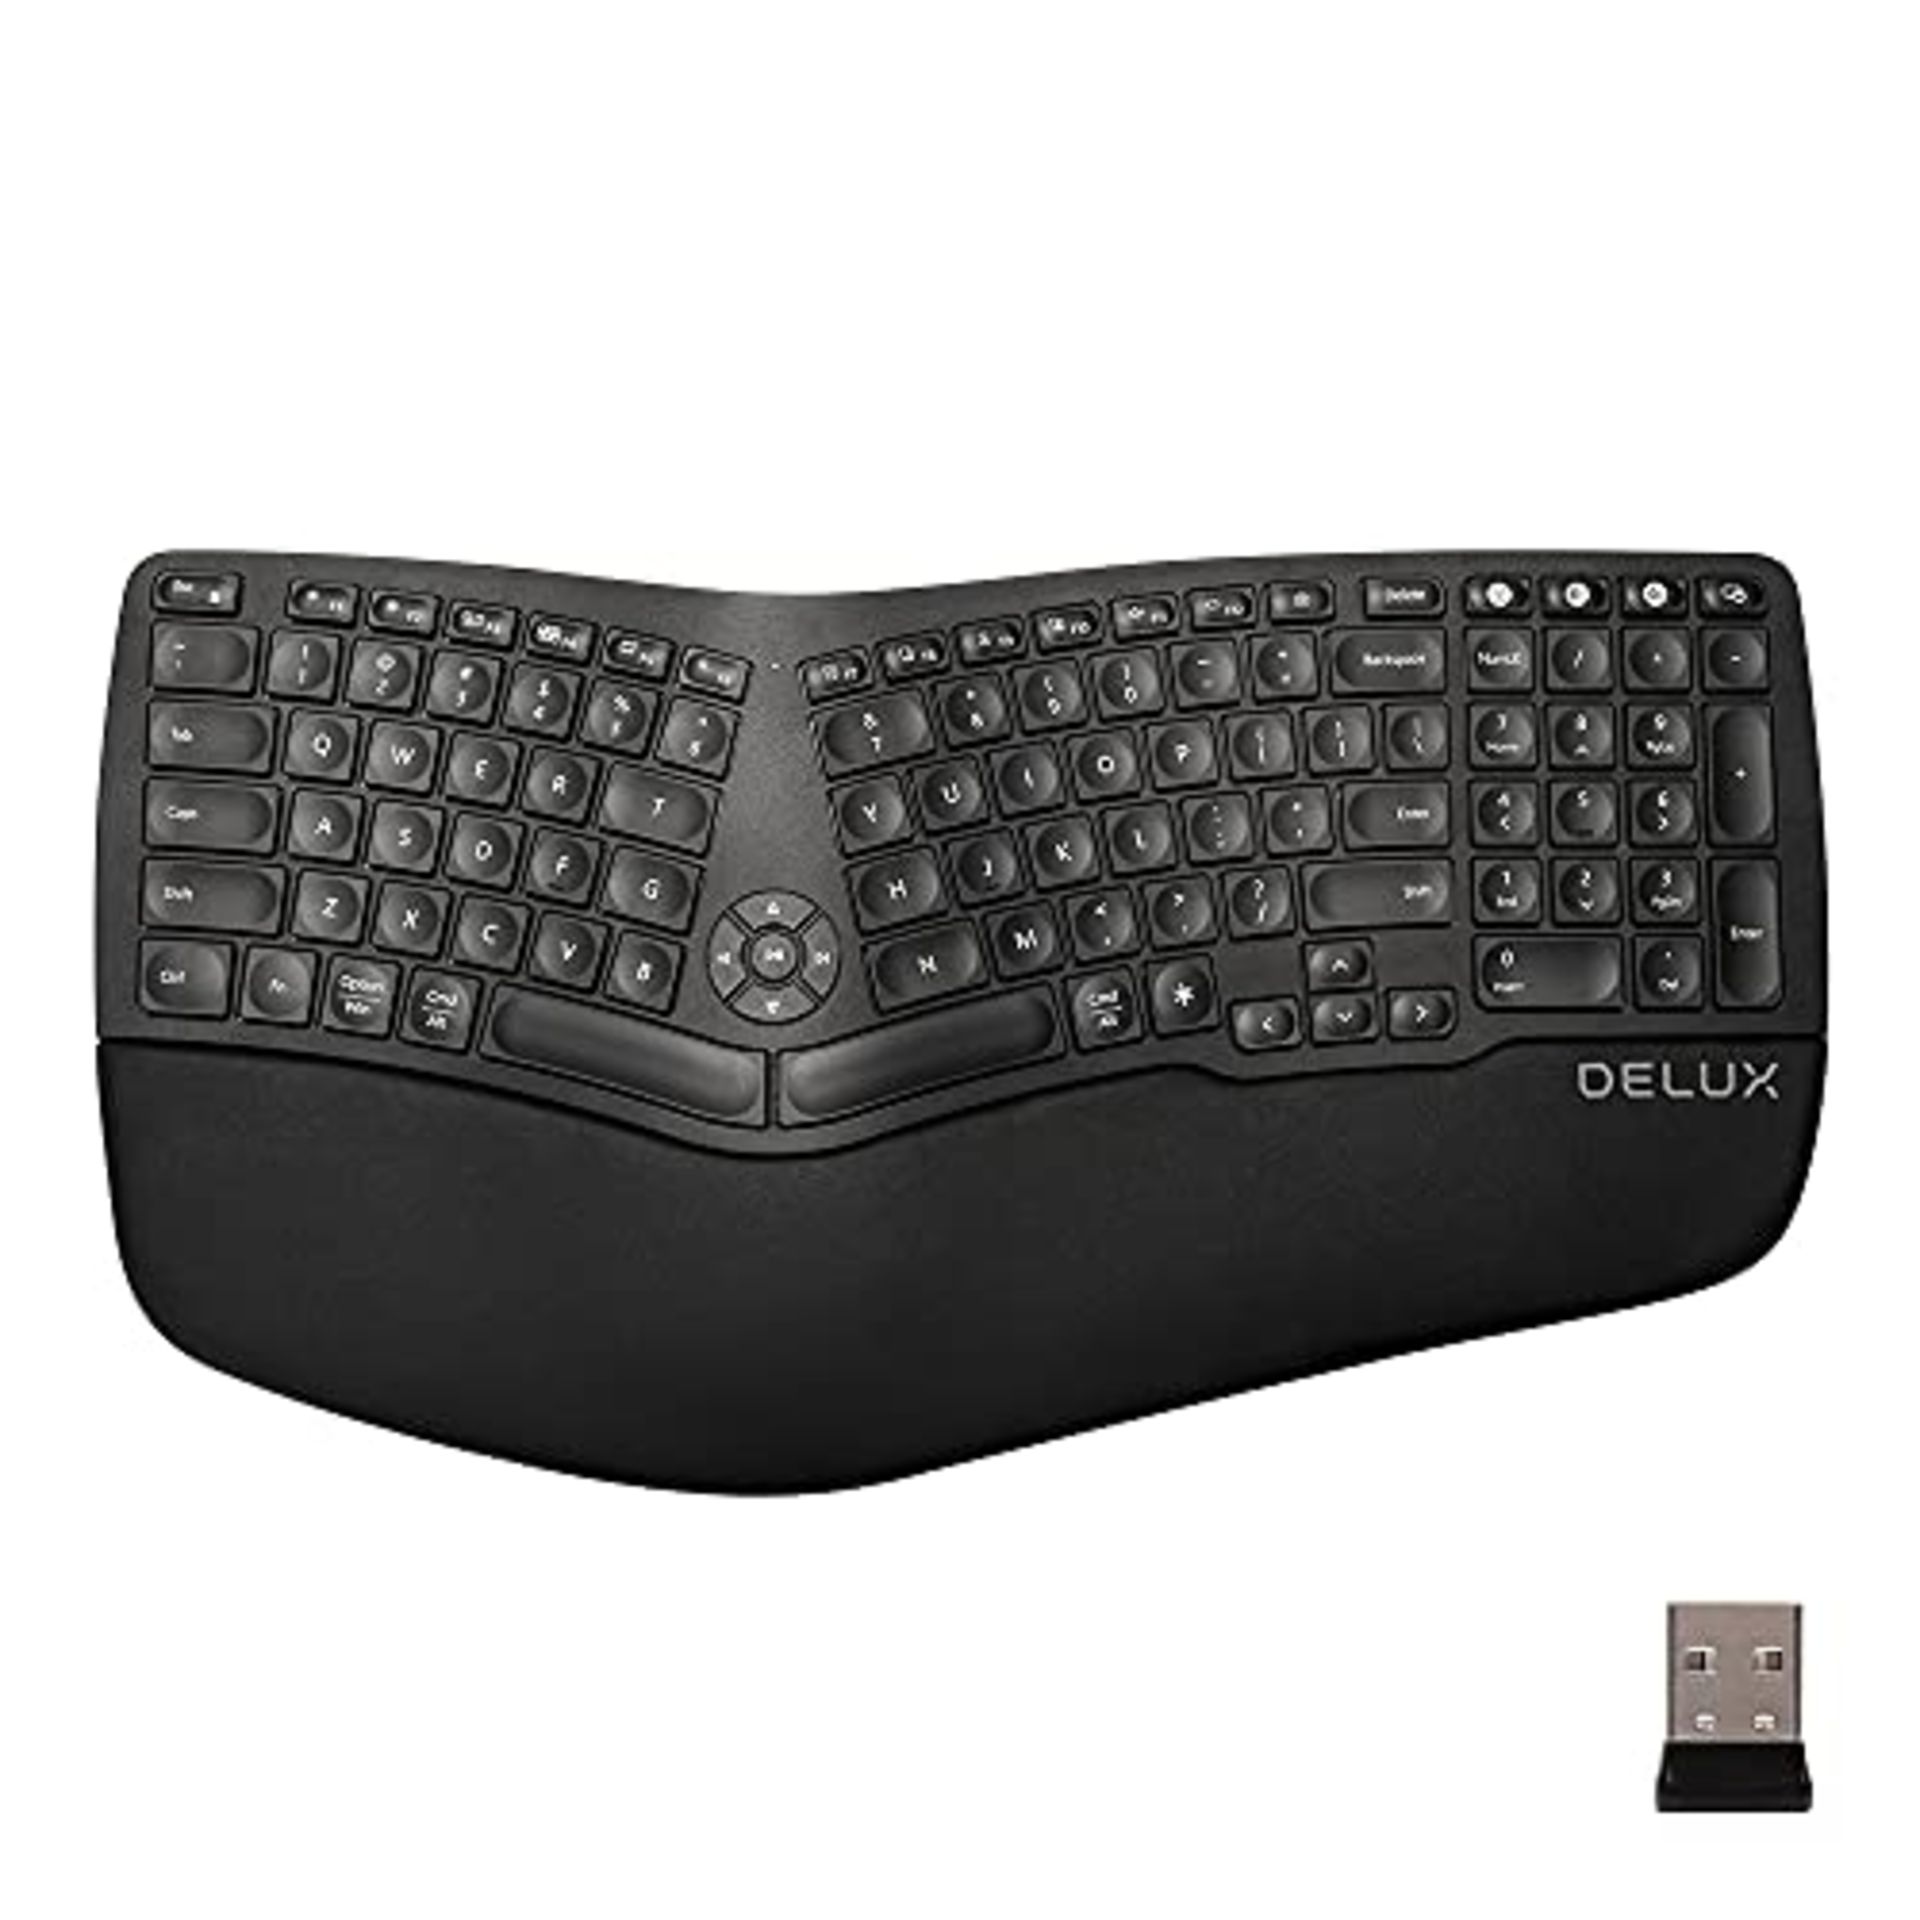 RRP £68.49 DeLUX Wireless Ergonomic Keyboard